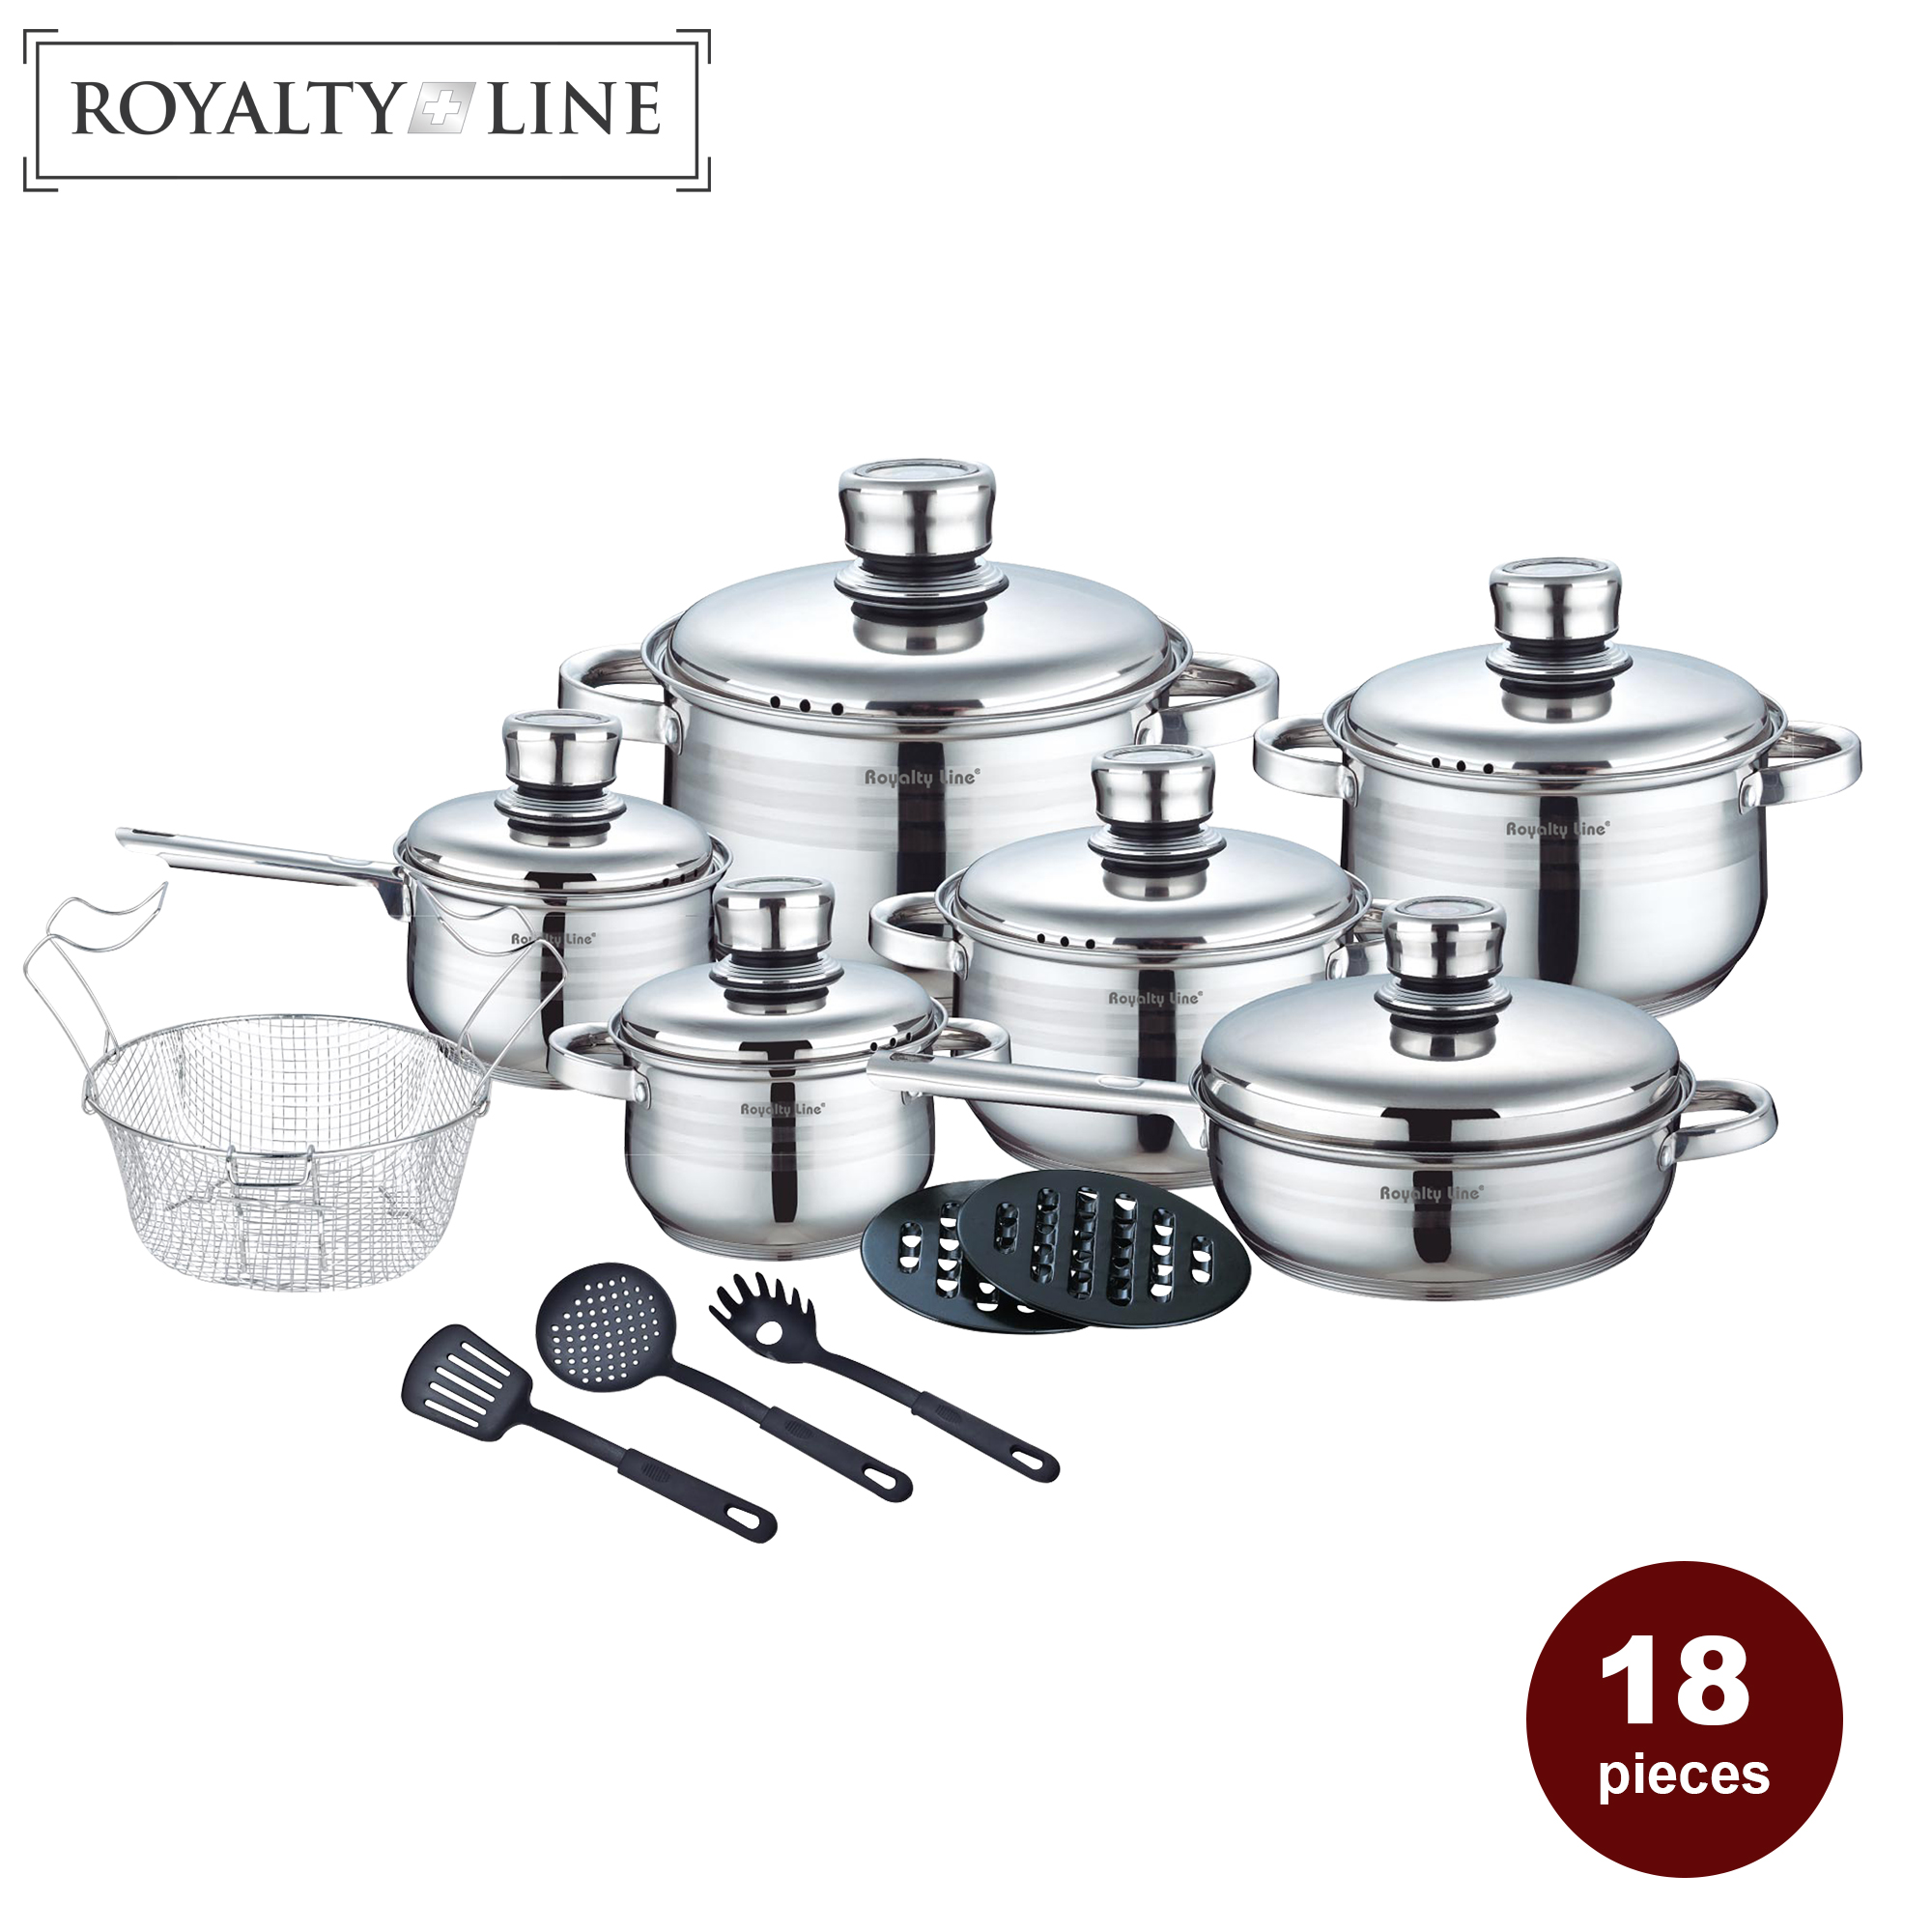 Royalty Line RL-1802; Utensilios de cocina de acero inoxidable, Utensilios de cocina, 18 piezas